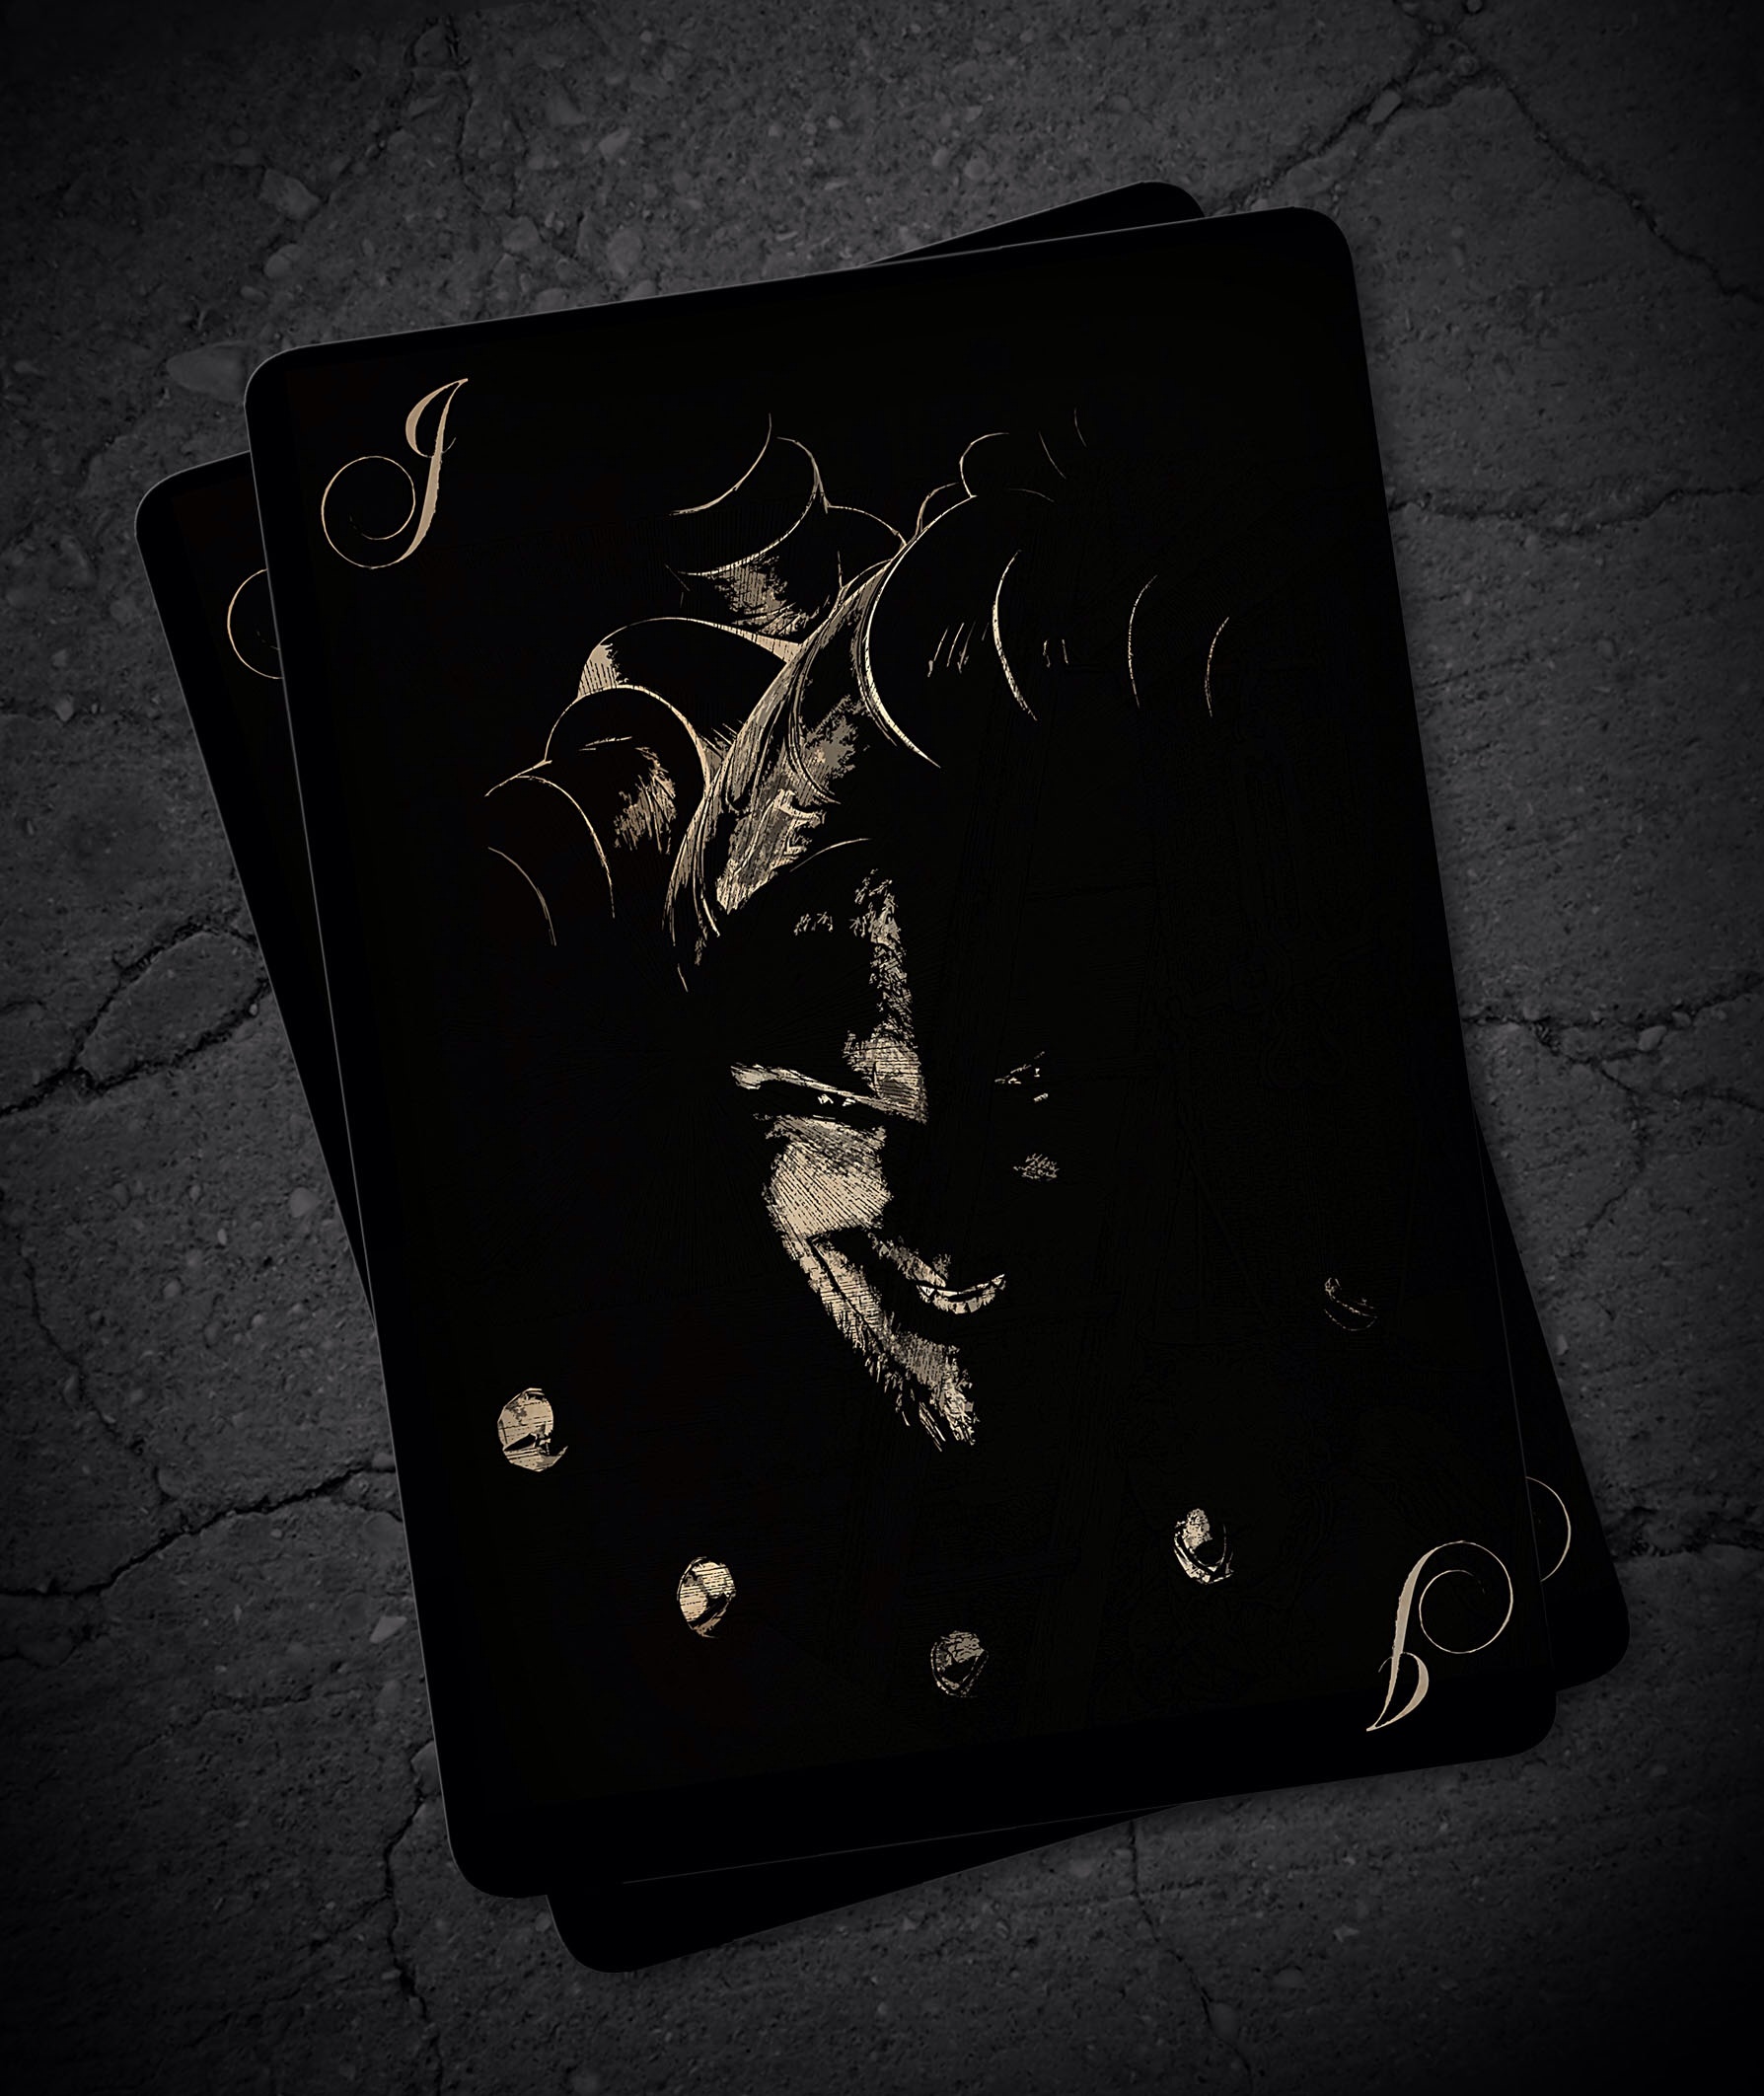 Joker Card By Leconte